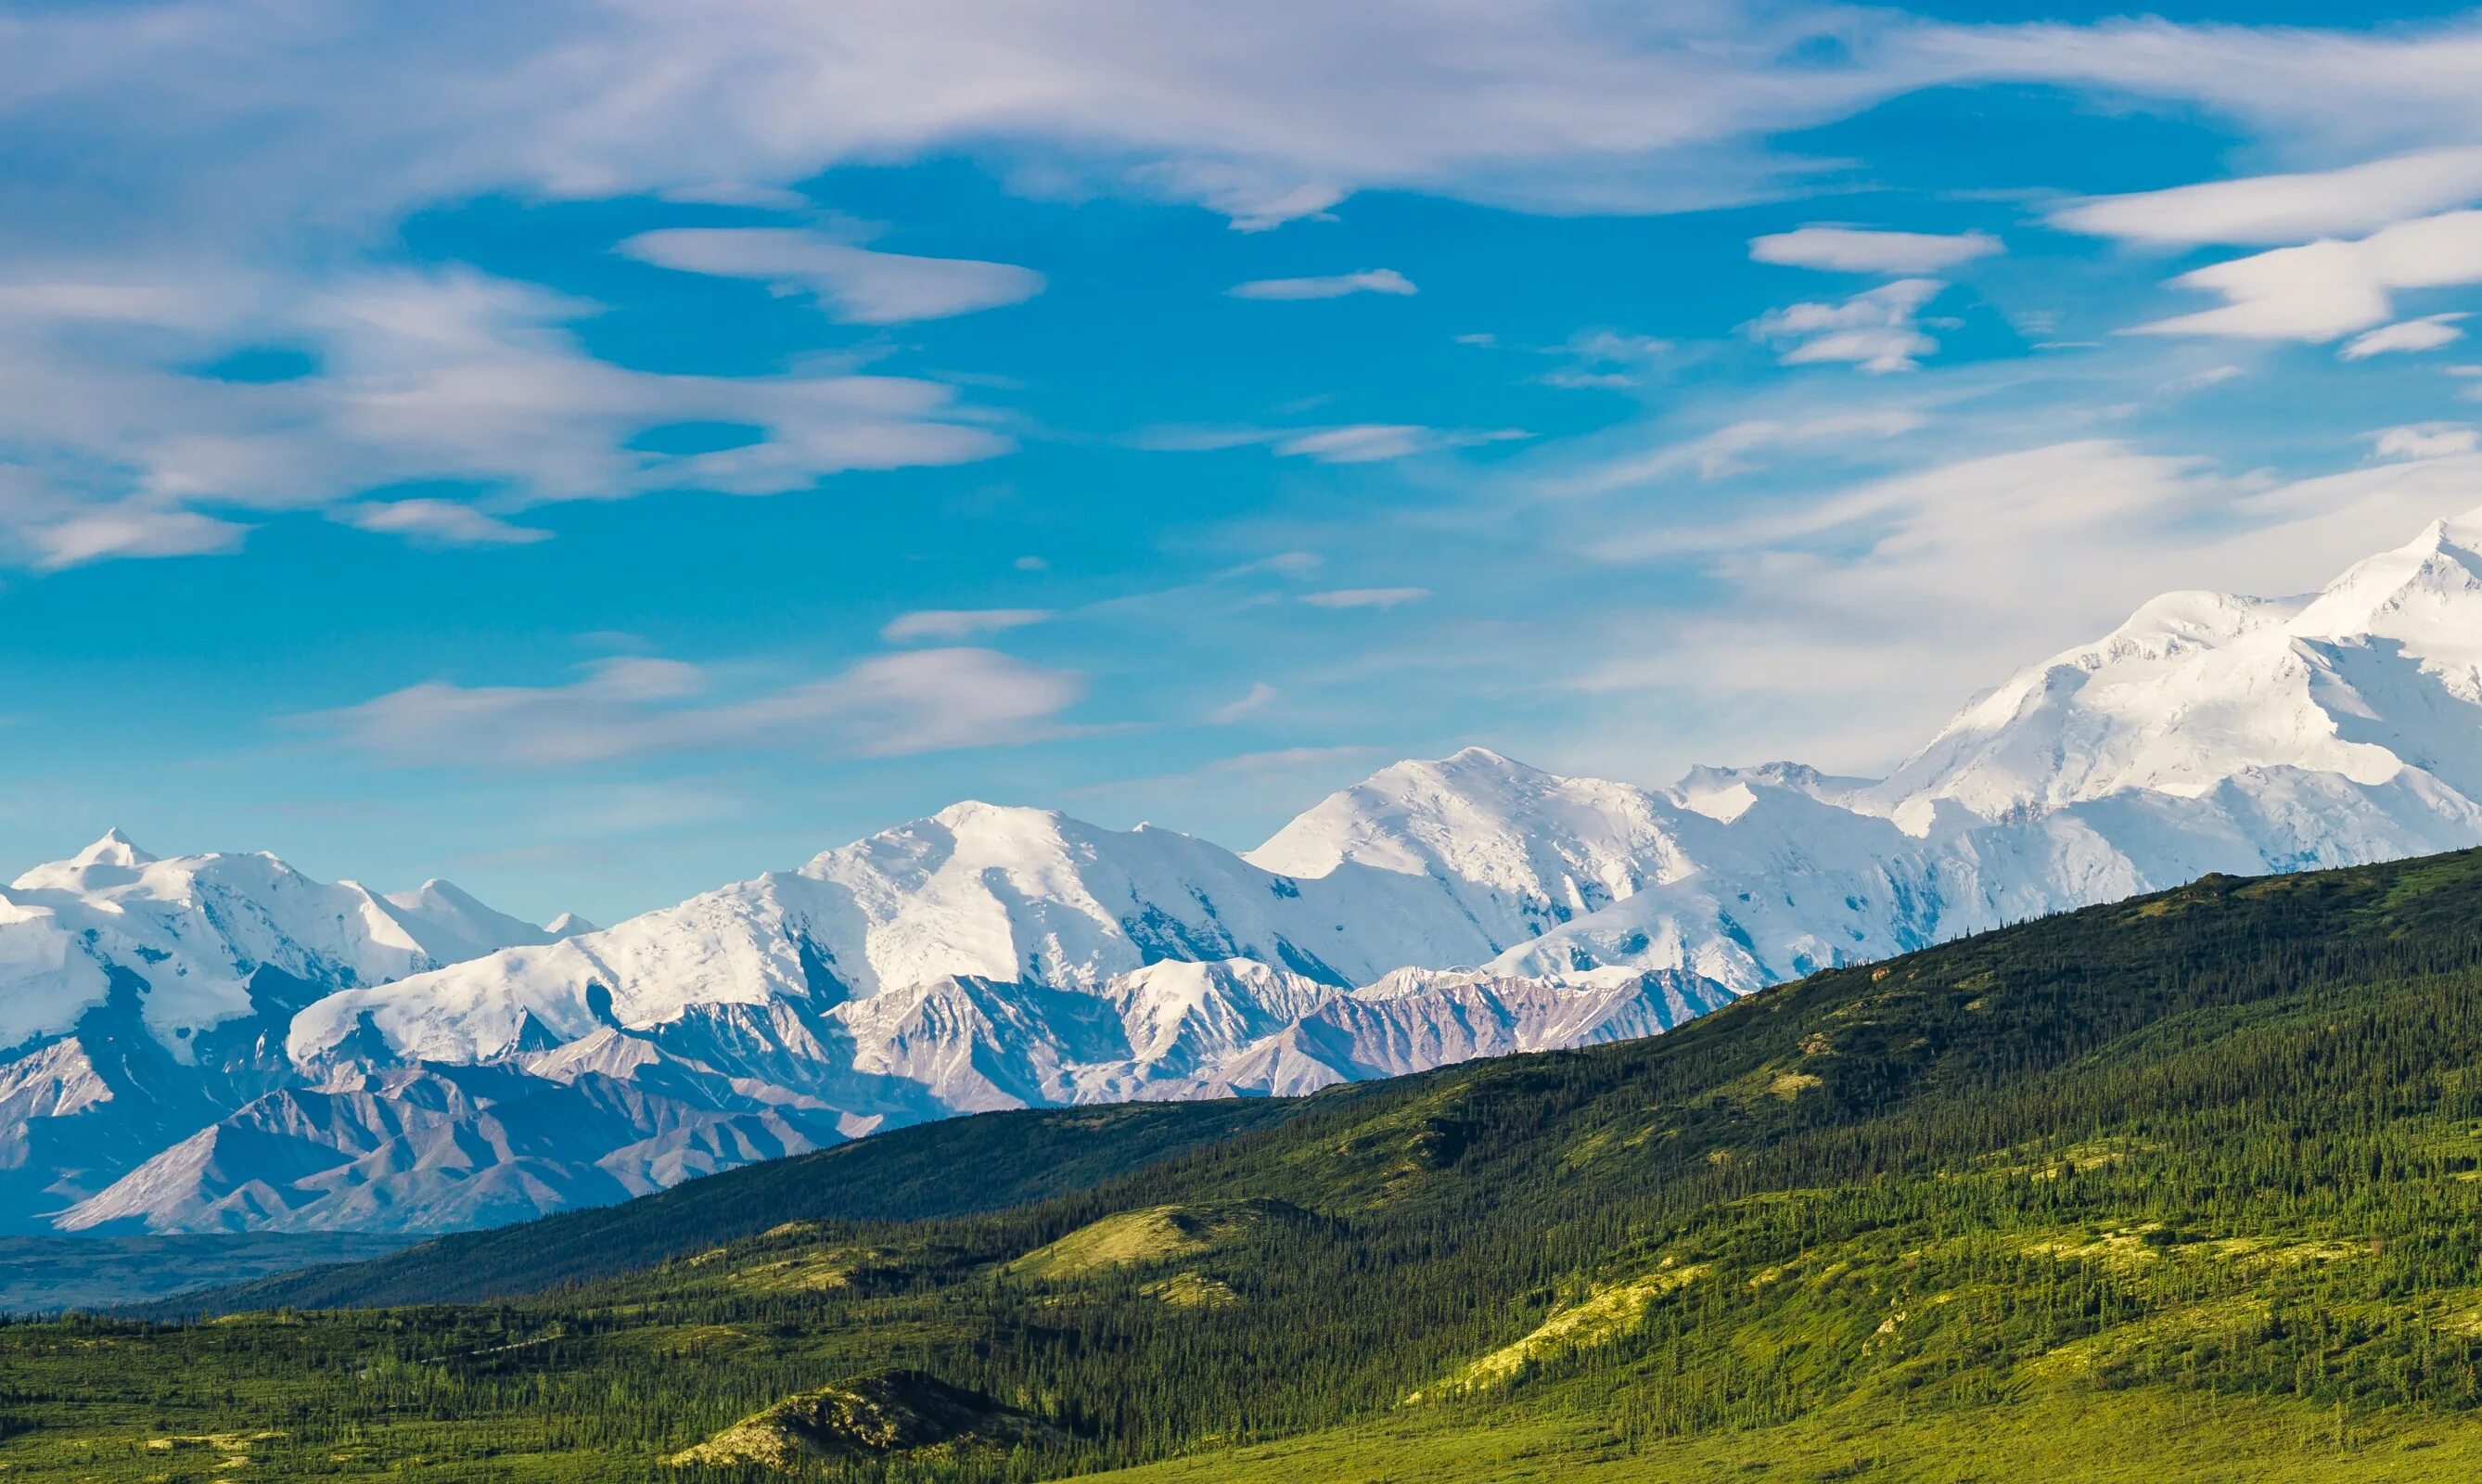 Тайна лазоревых гор. Национальный парк Денали Аляска. Хищники горы Денали. Горы вид сверху. Природа.